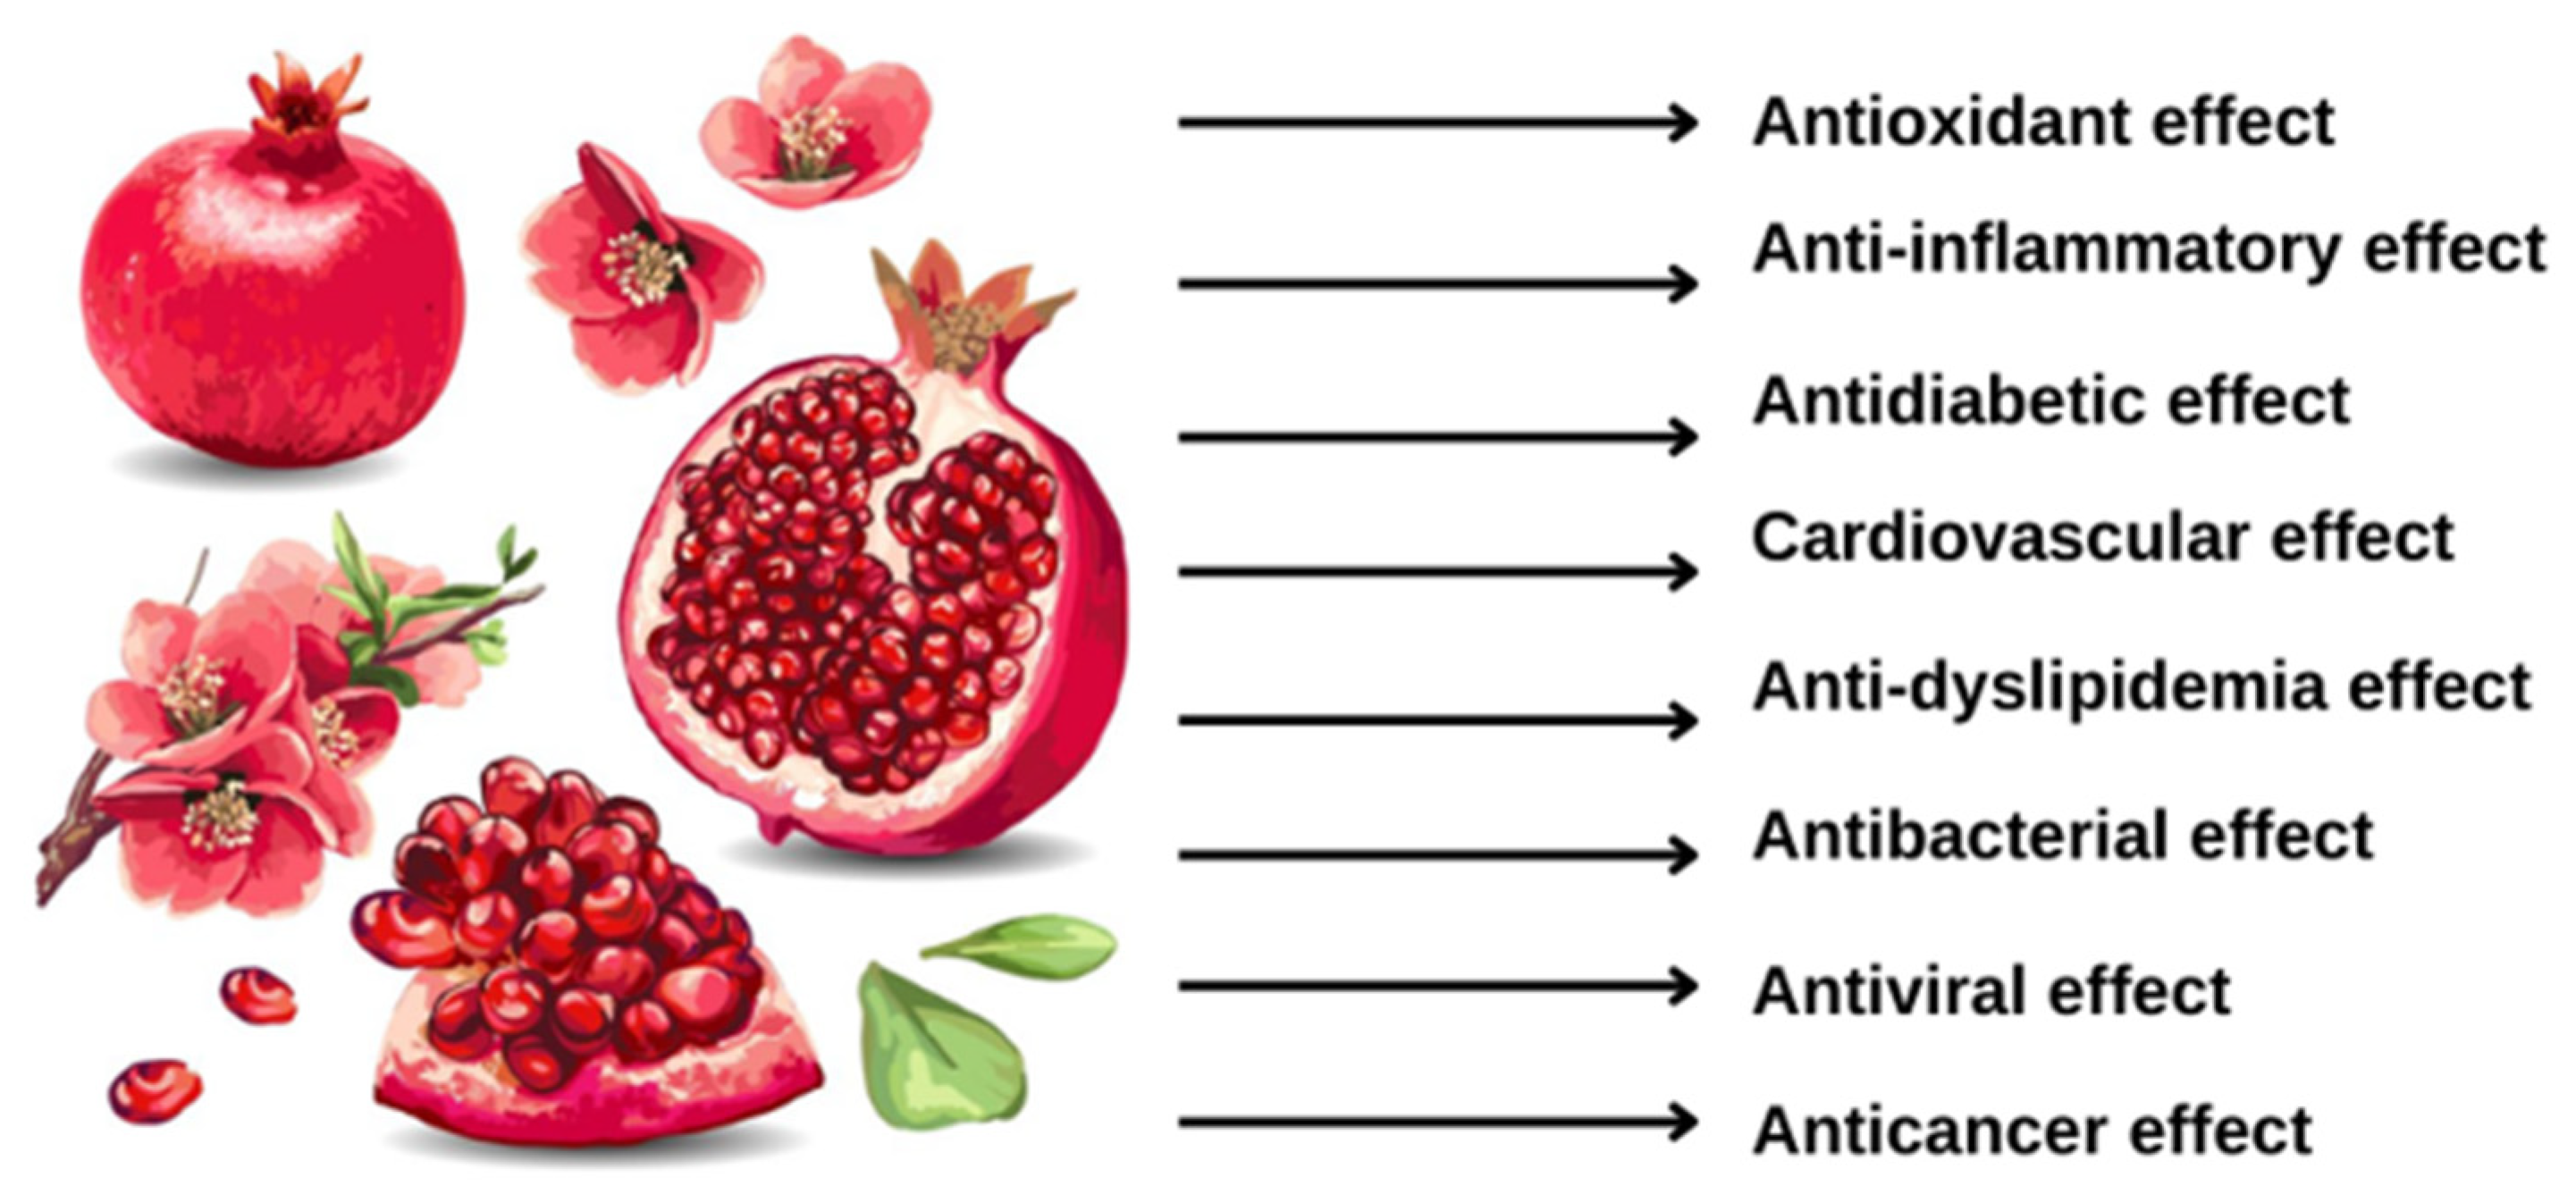 Fresh pomegranate benefits